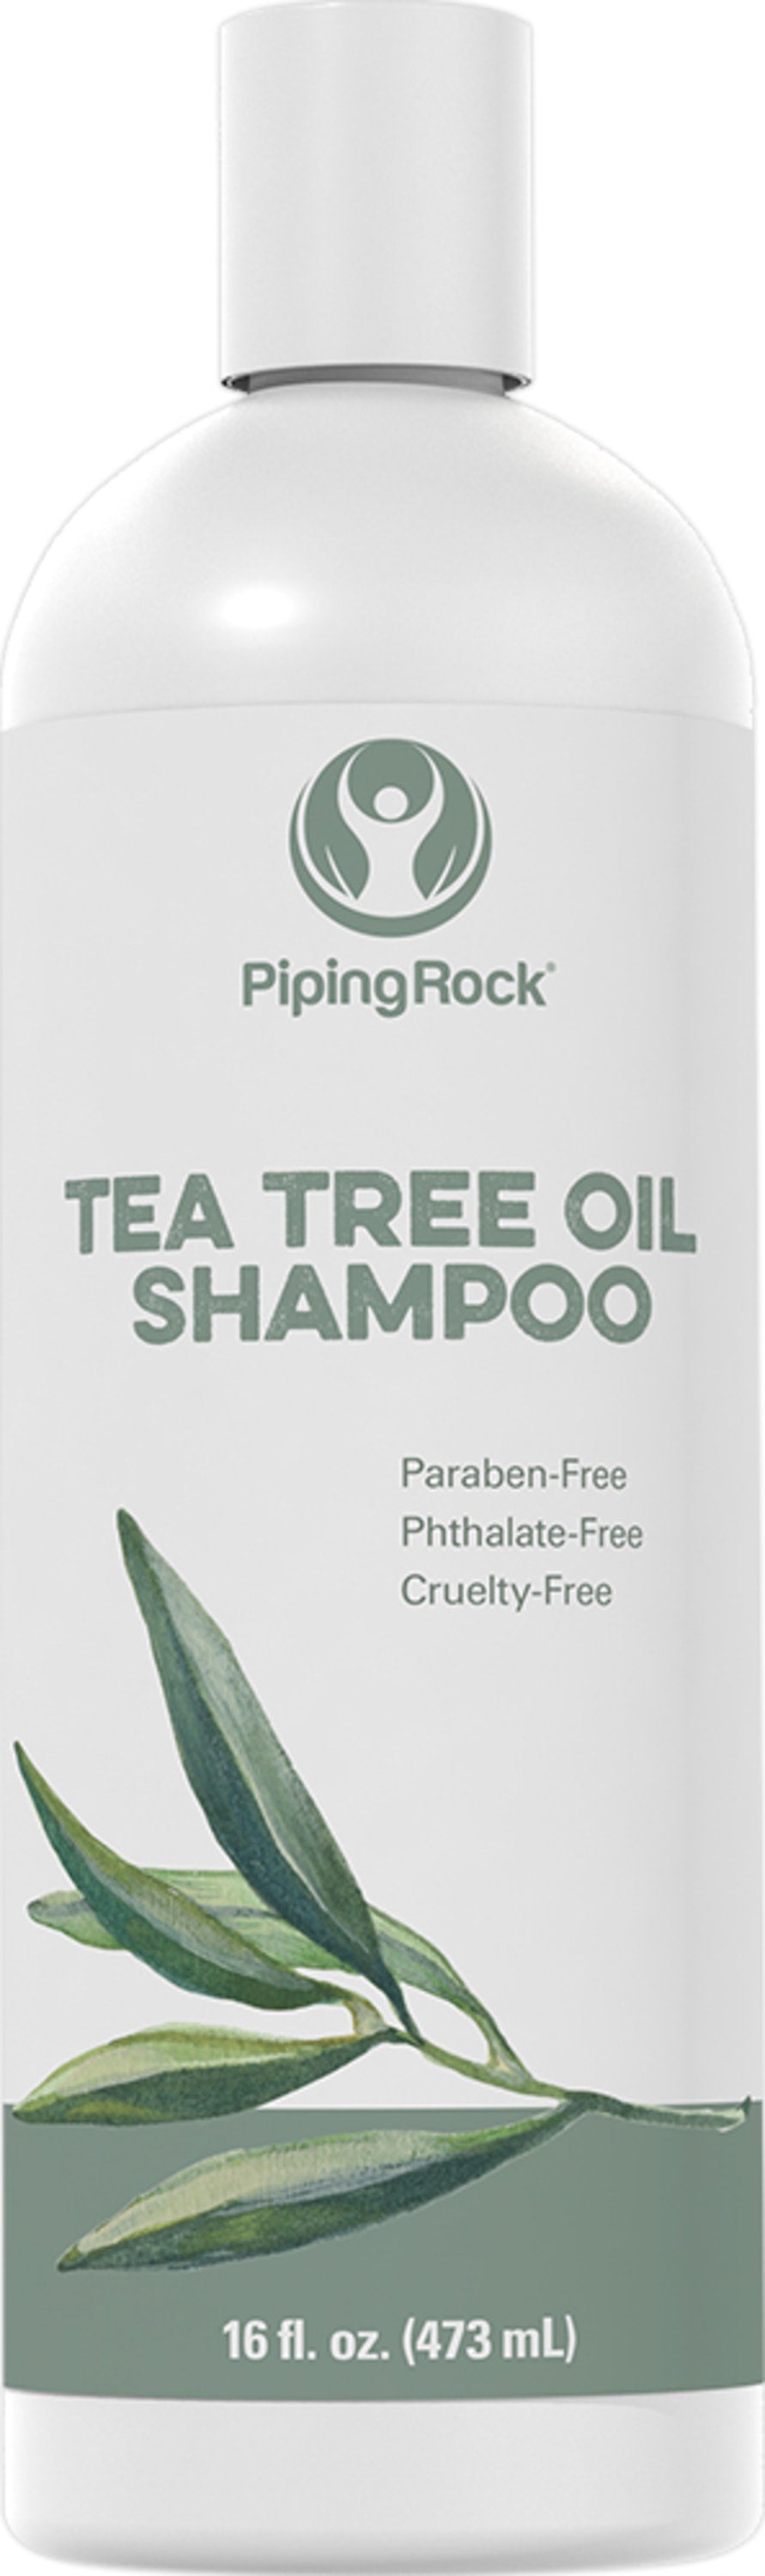 piping rock szampon z olejkiem herbacianym